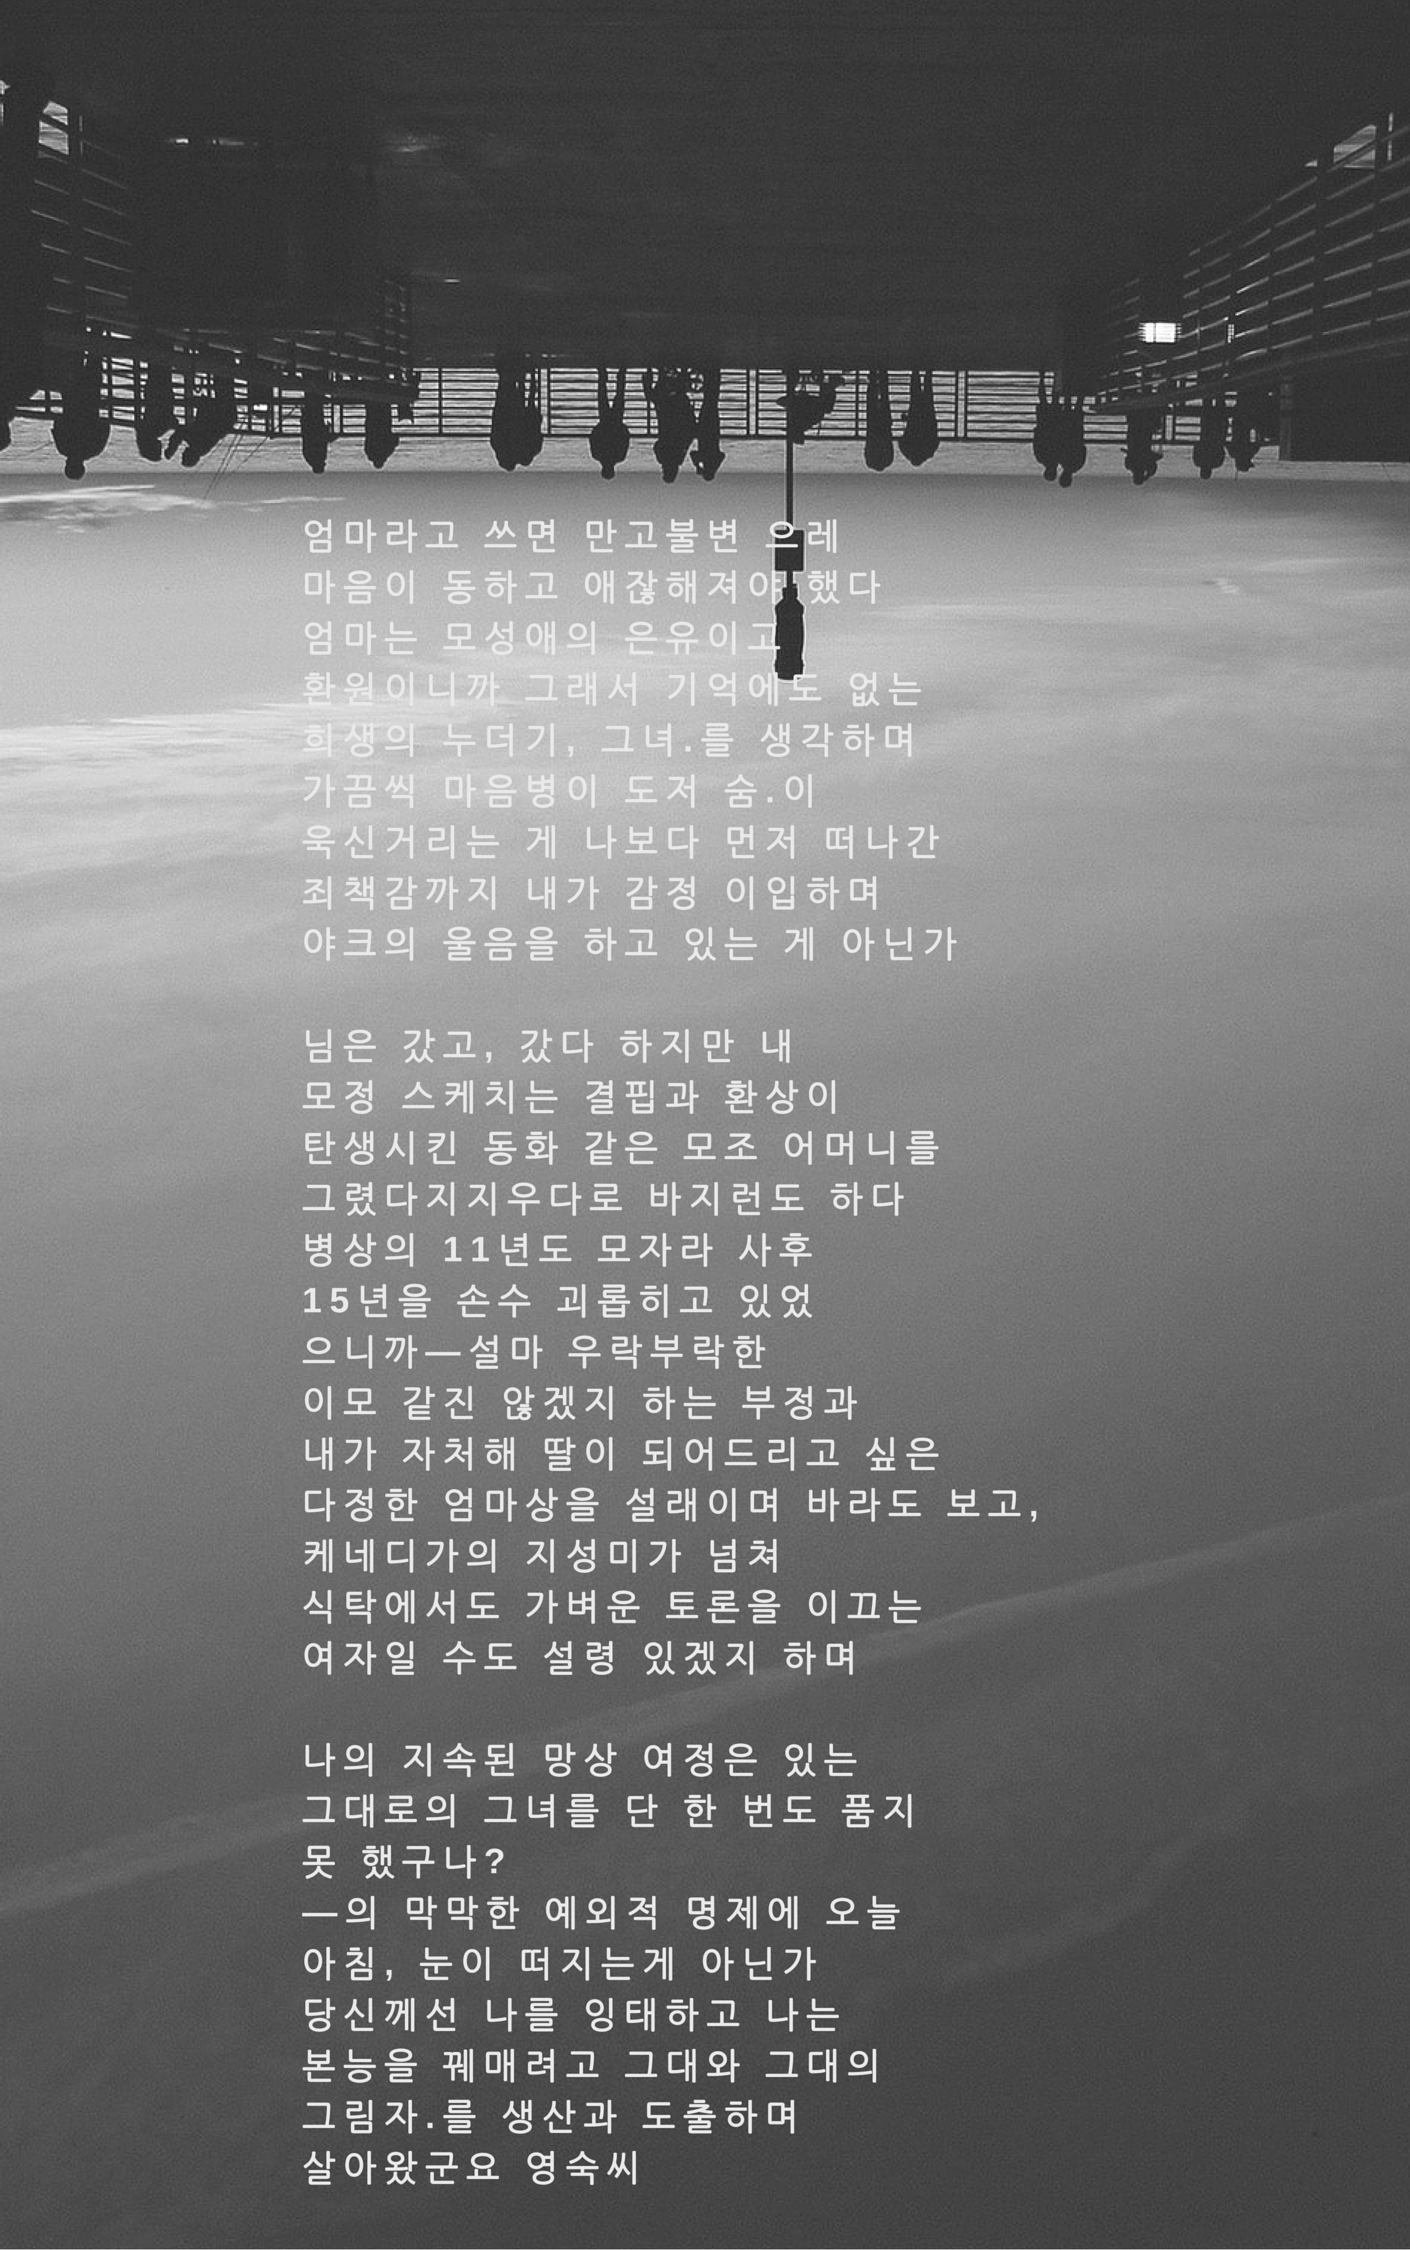 시 korean poetry. 한국어. Korean writing, Korean quotes